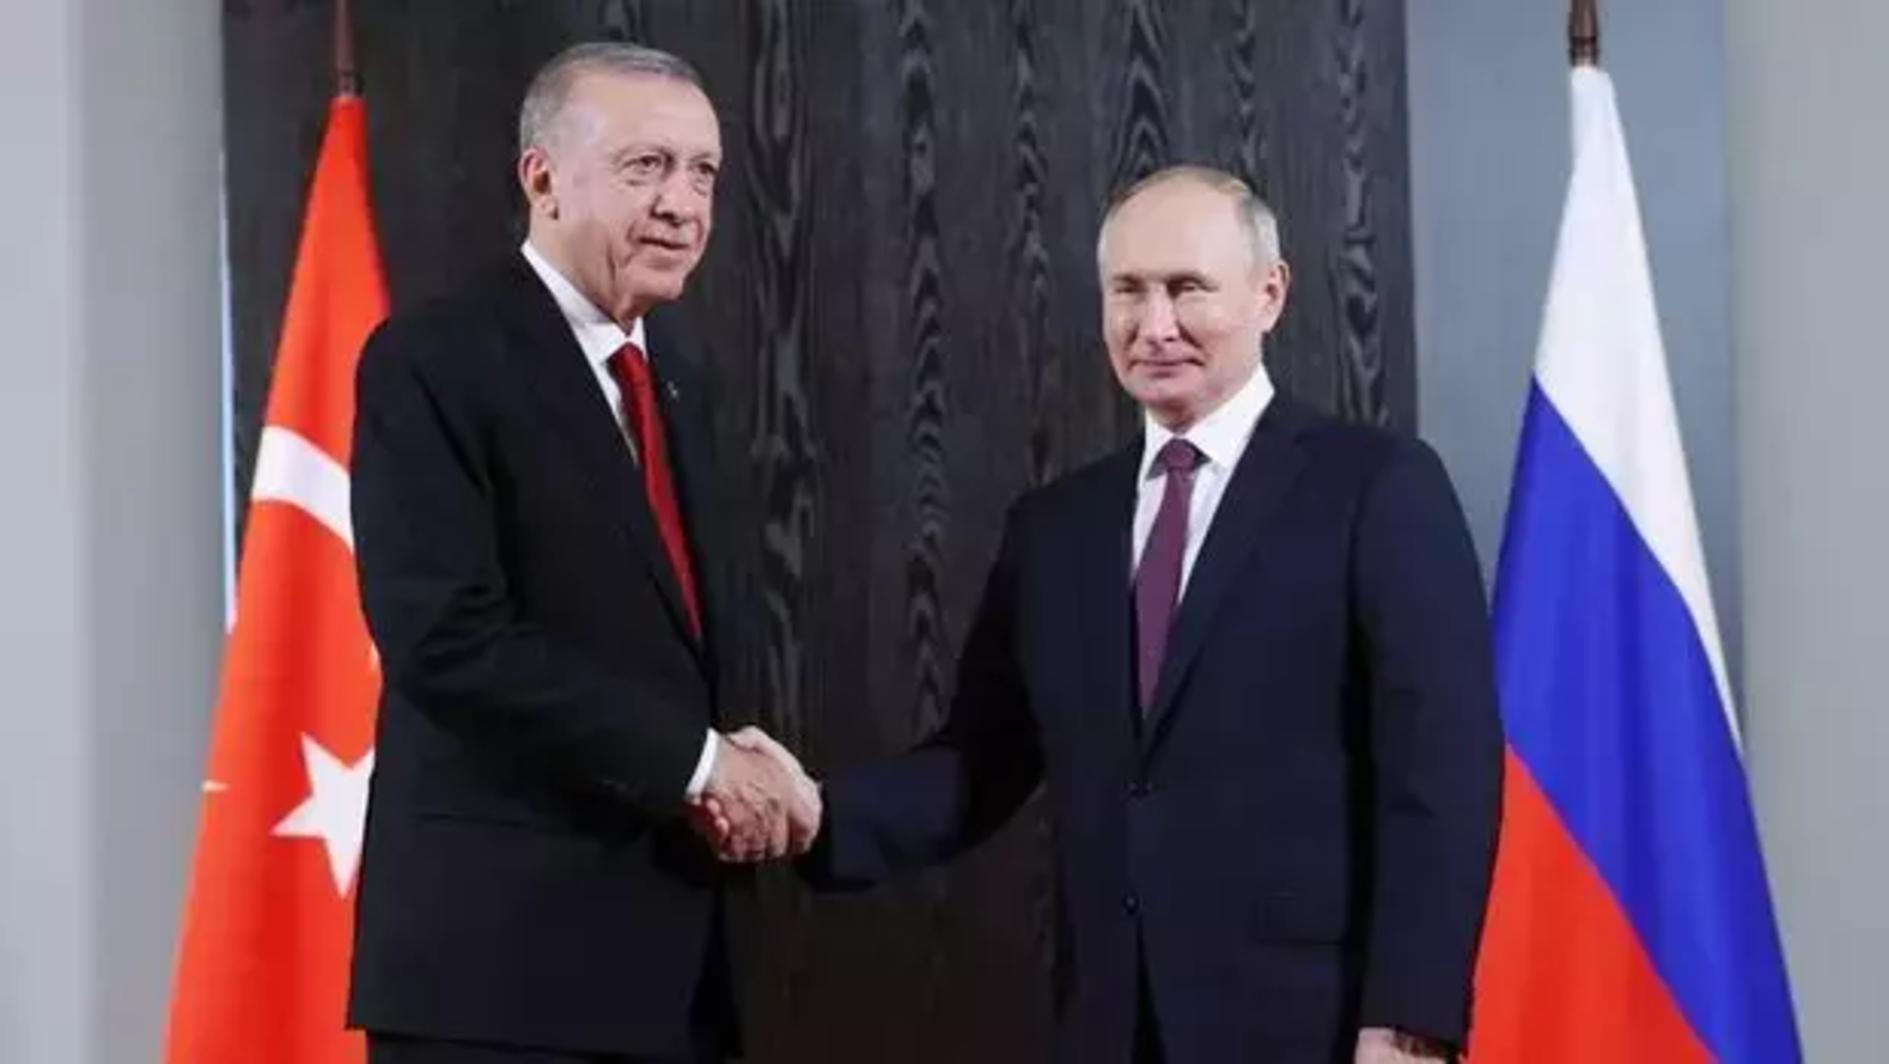 Erdoğan feliciteert Poetin met zijn herverkiezingswinst